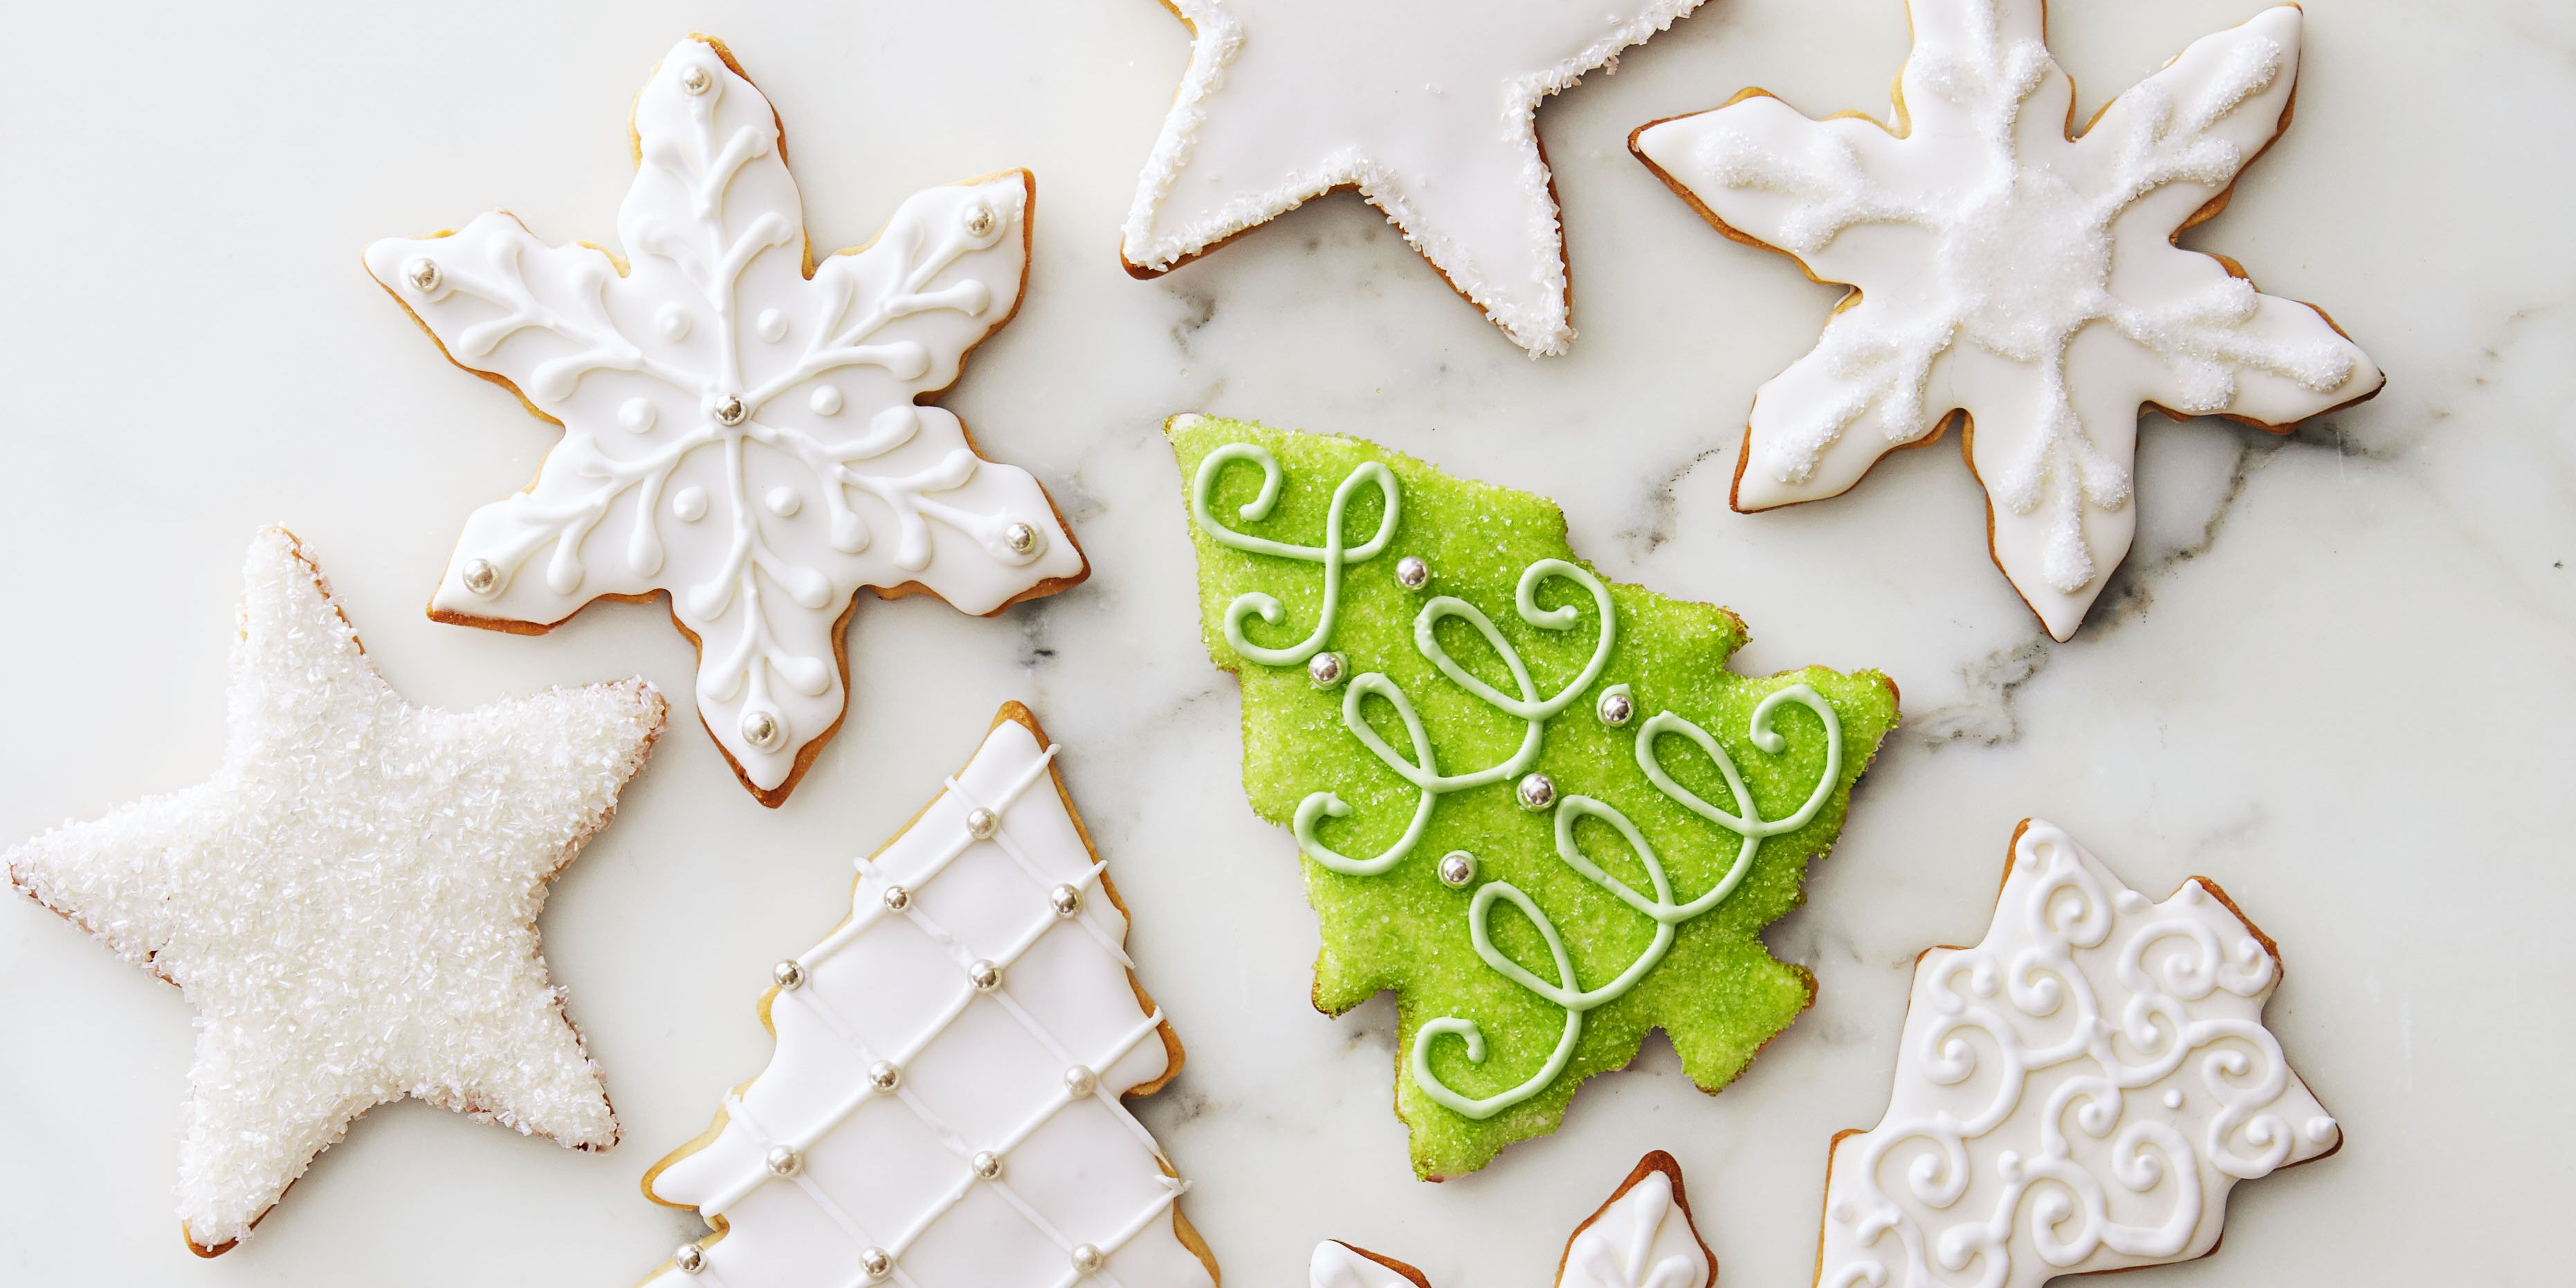 Easy Sugar Cookies Recipe - Best Holiday Sugar Cookies Ever